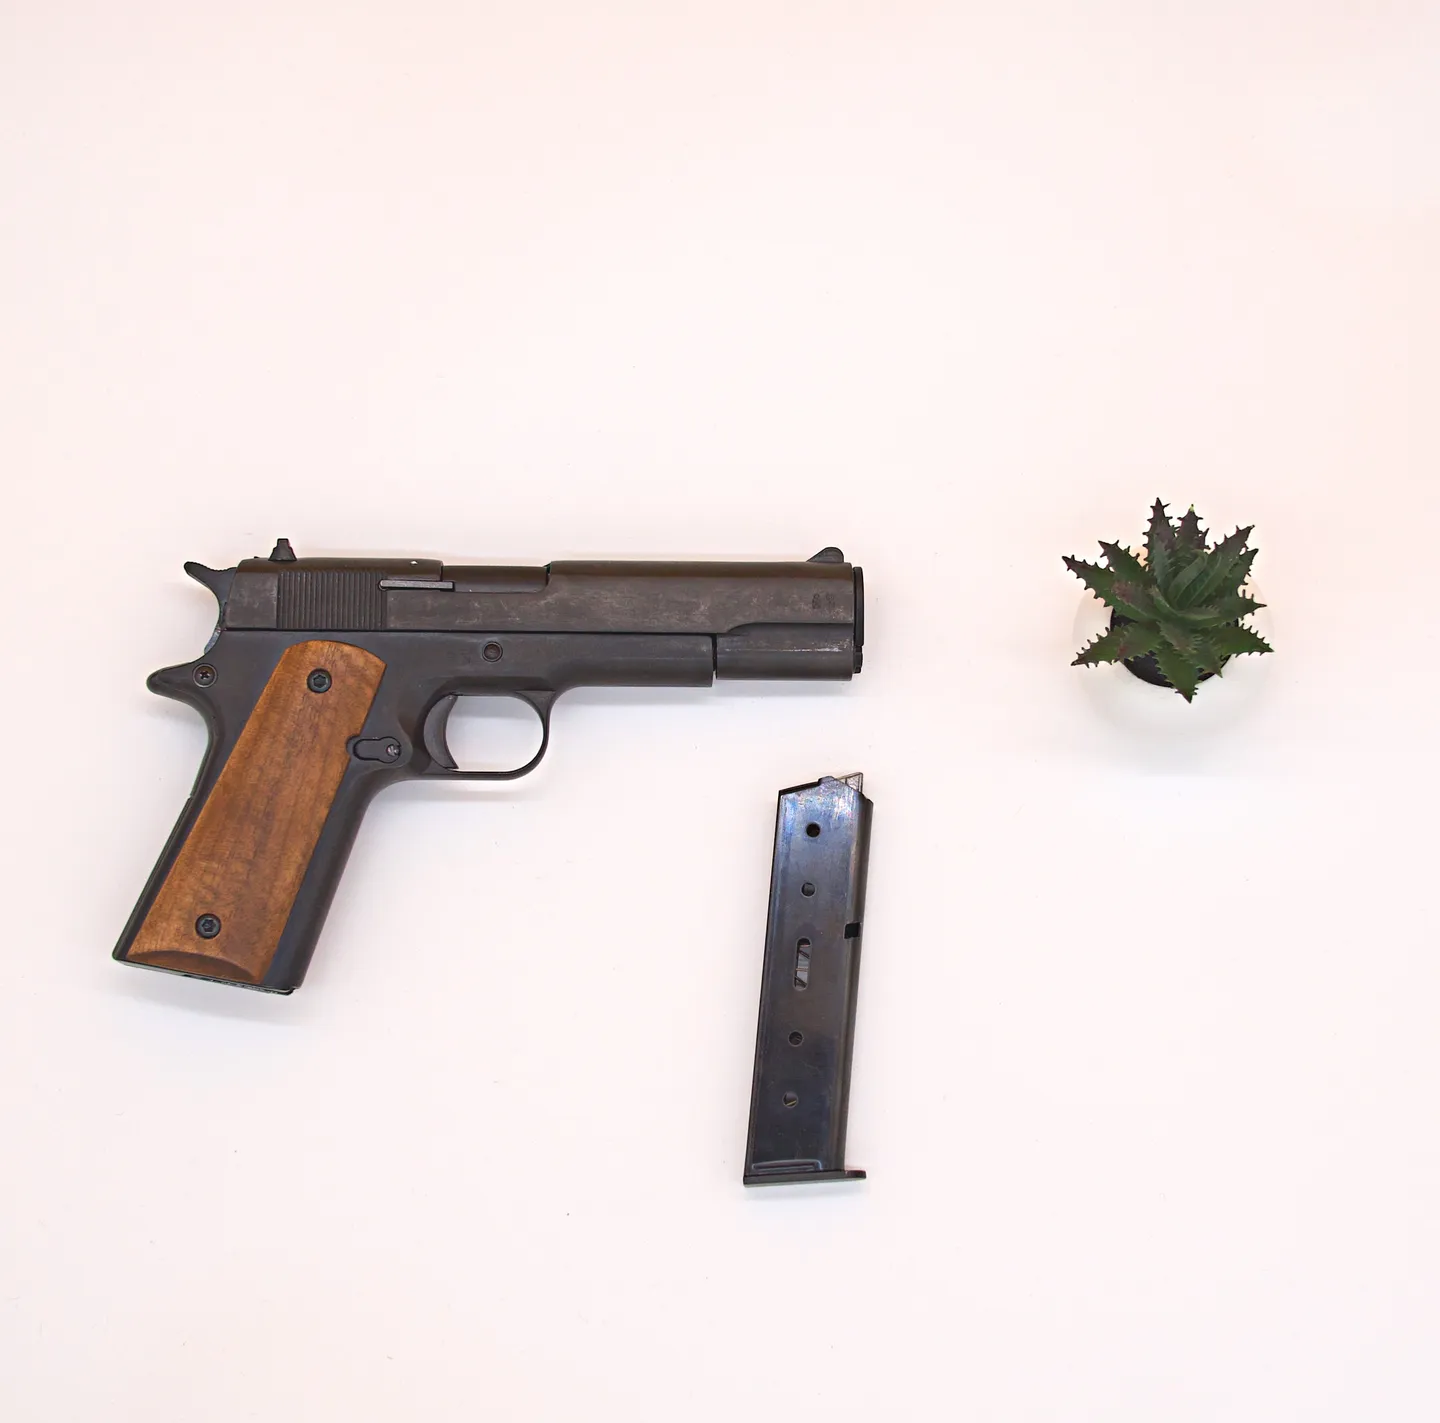 Pistola de alarma y defensa - Pistola de alarma y defensa Kimar 911 9mm PAK – estilo Colt 1911